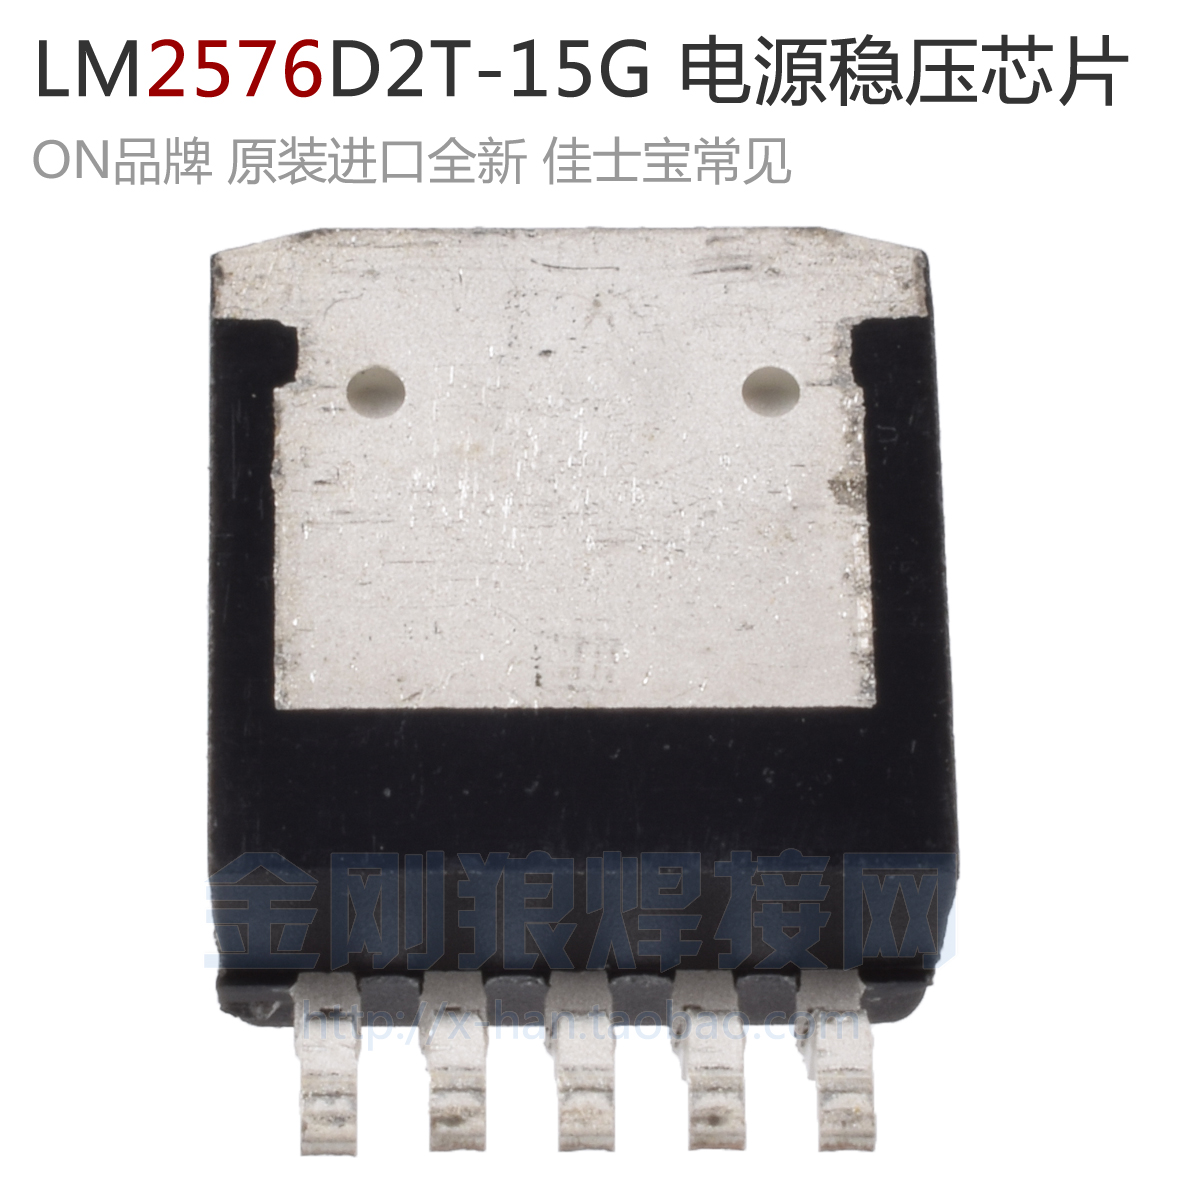 LM2576D2T-15G原装进口贴片开关电源稳压芯片深圳逆变焊机配件-封面